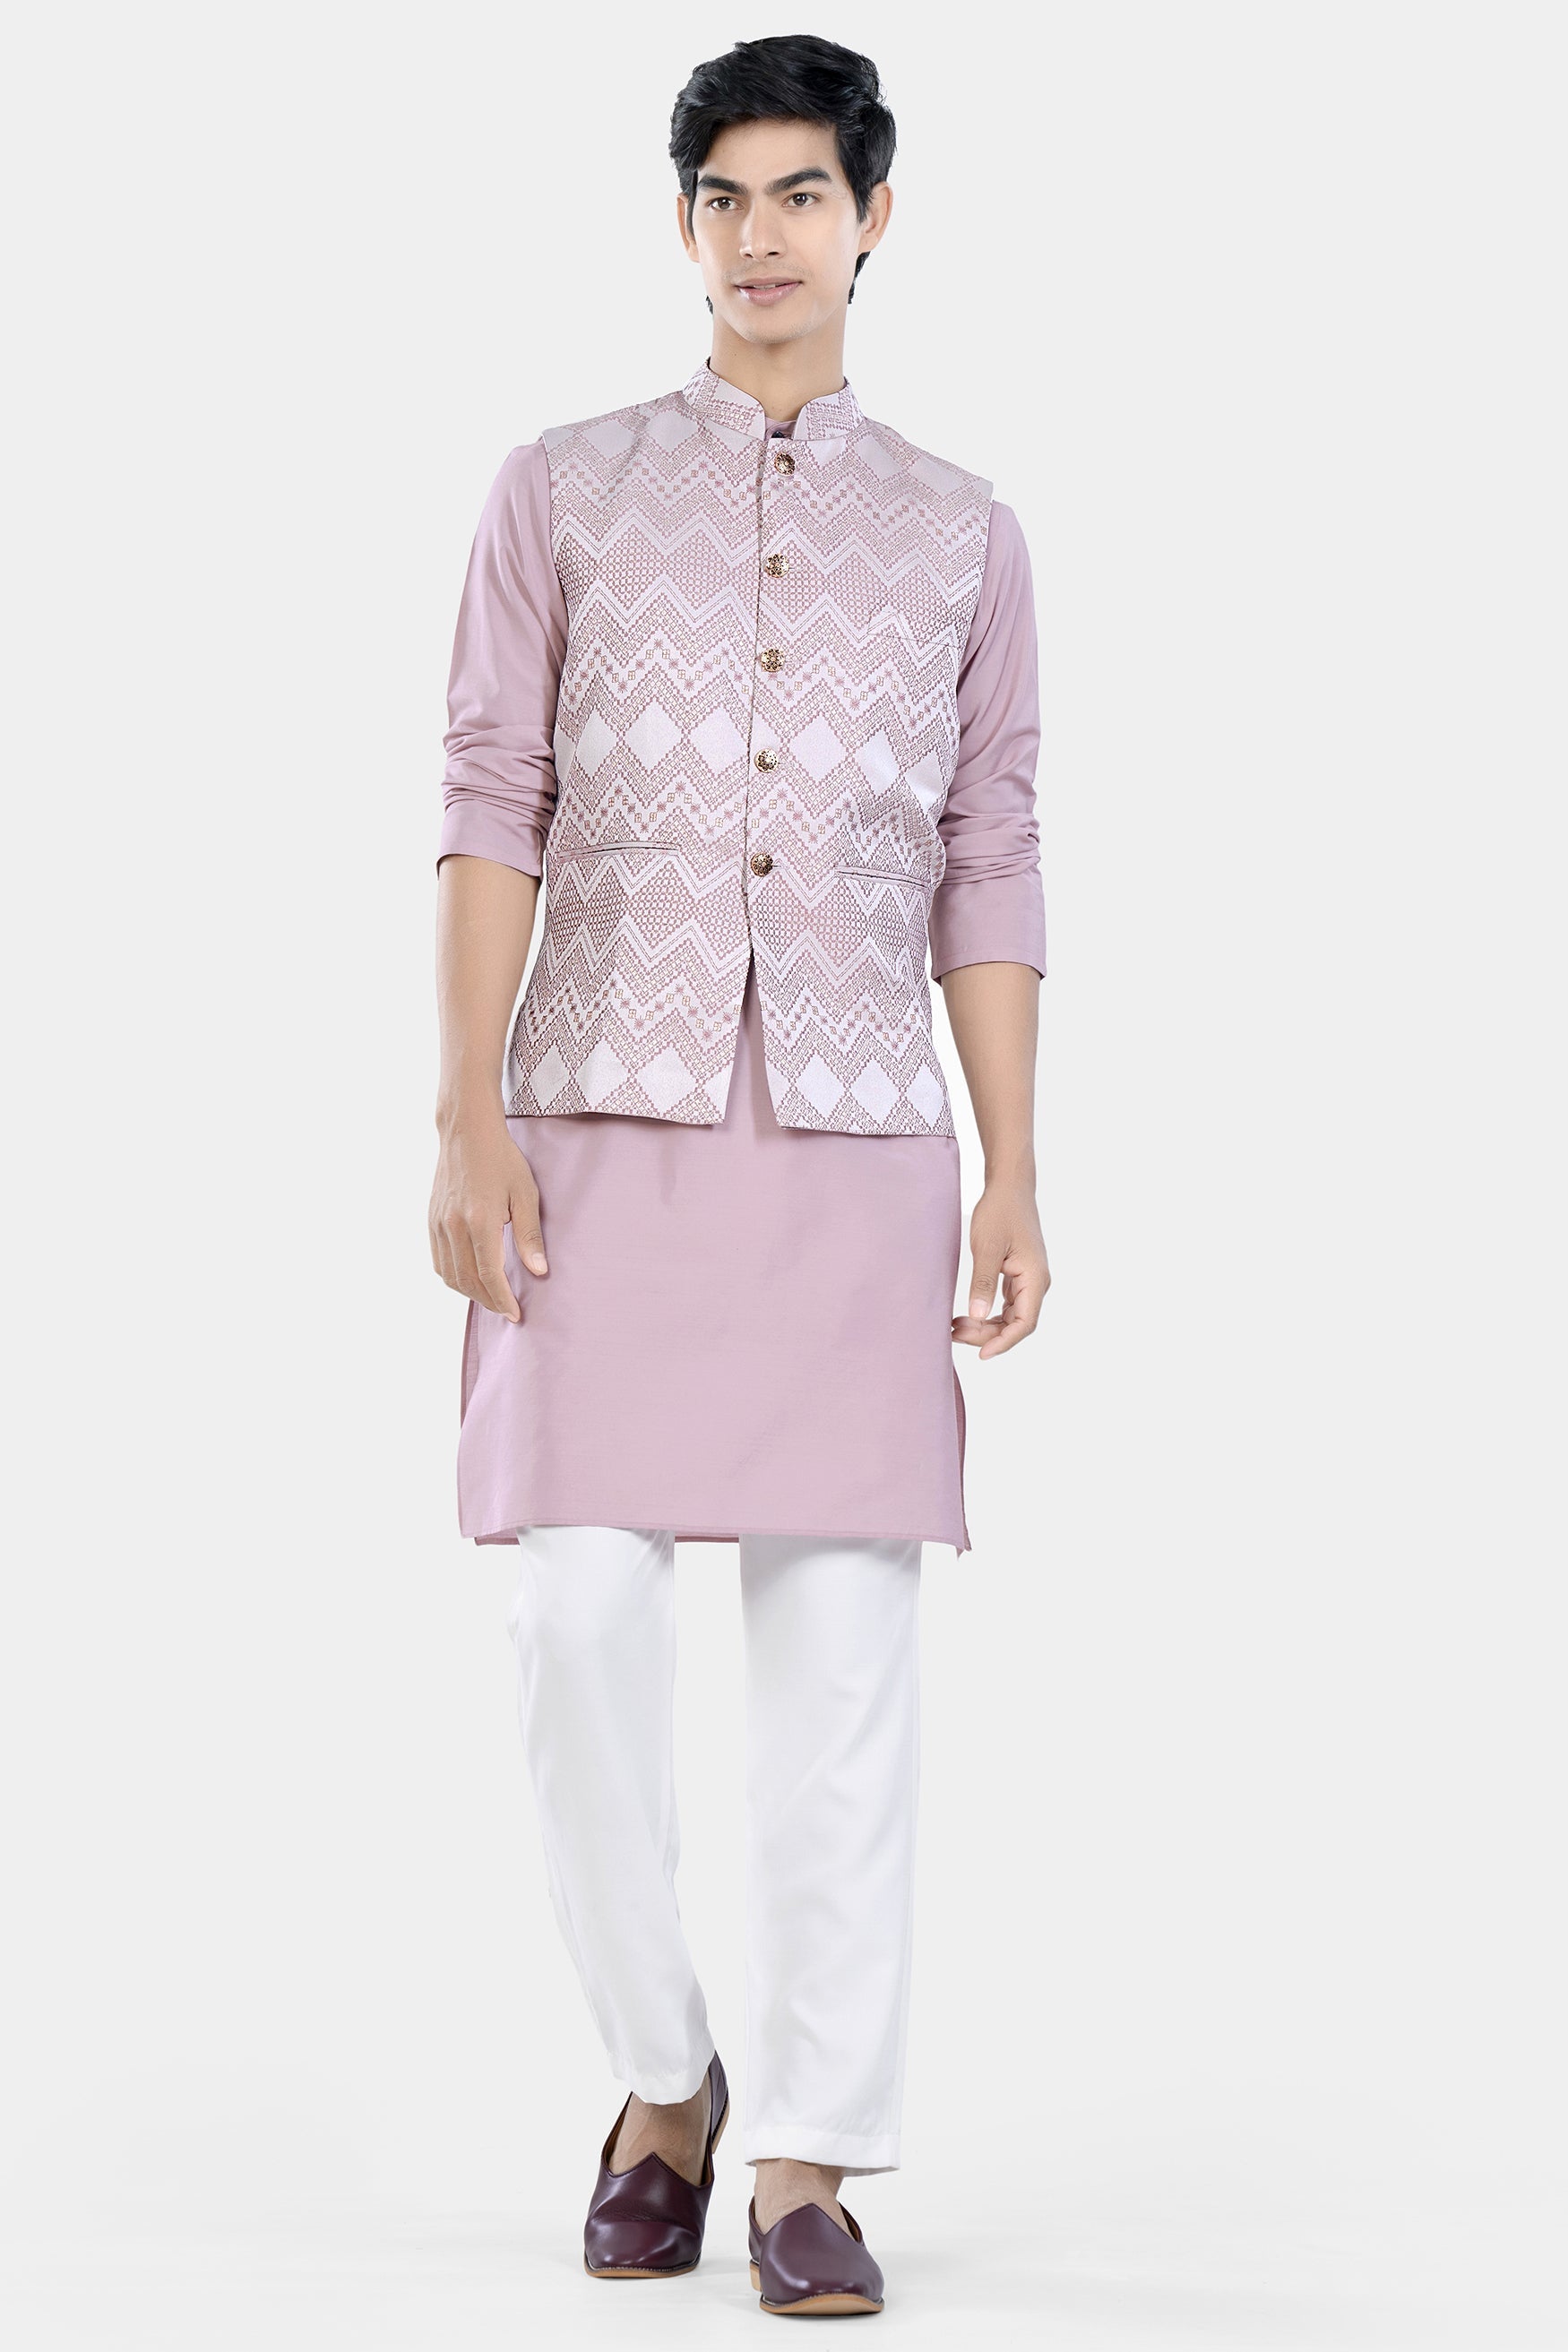 Blossom Pink Chevron Thread Embroidered Designer Nehru Jacket